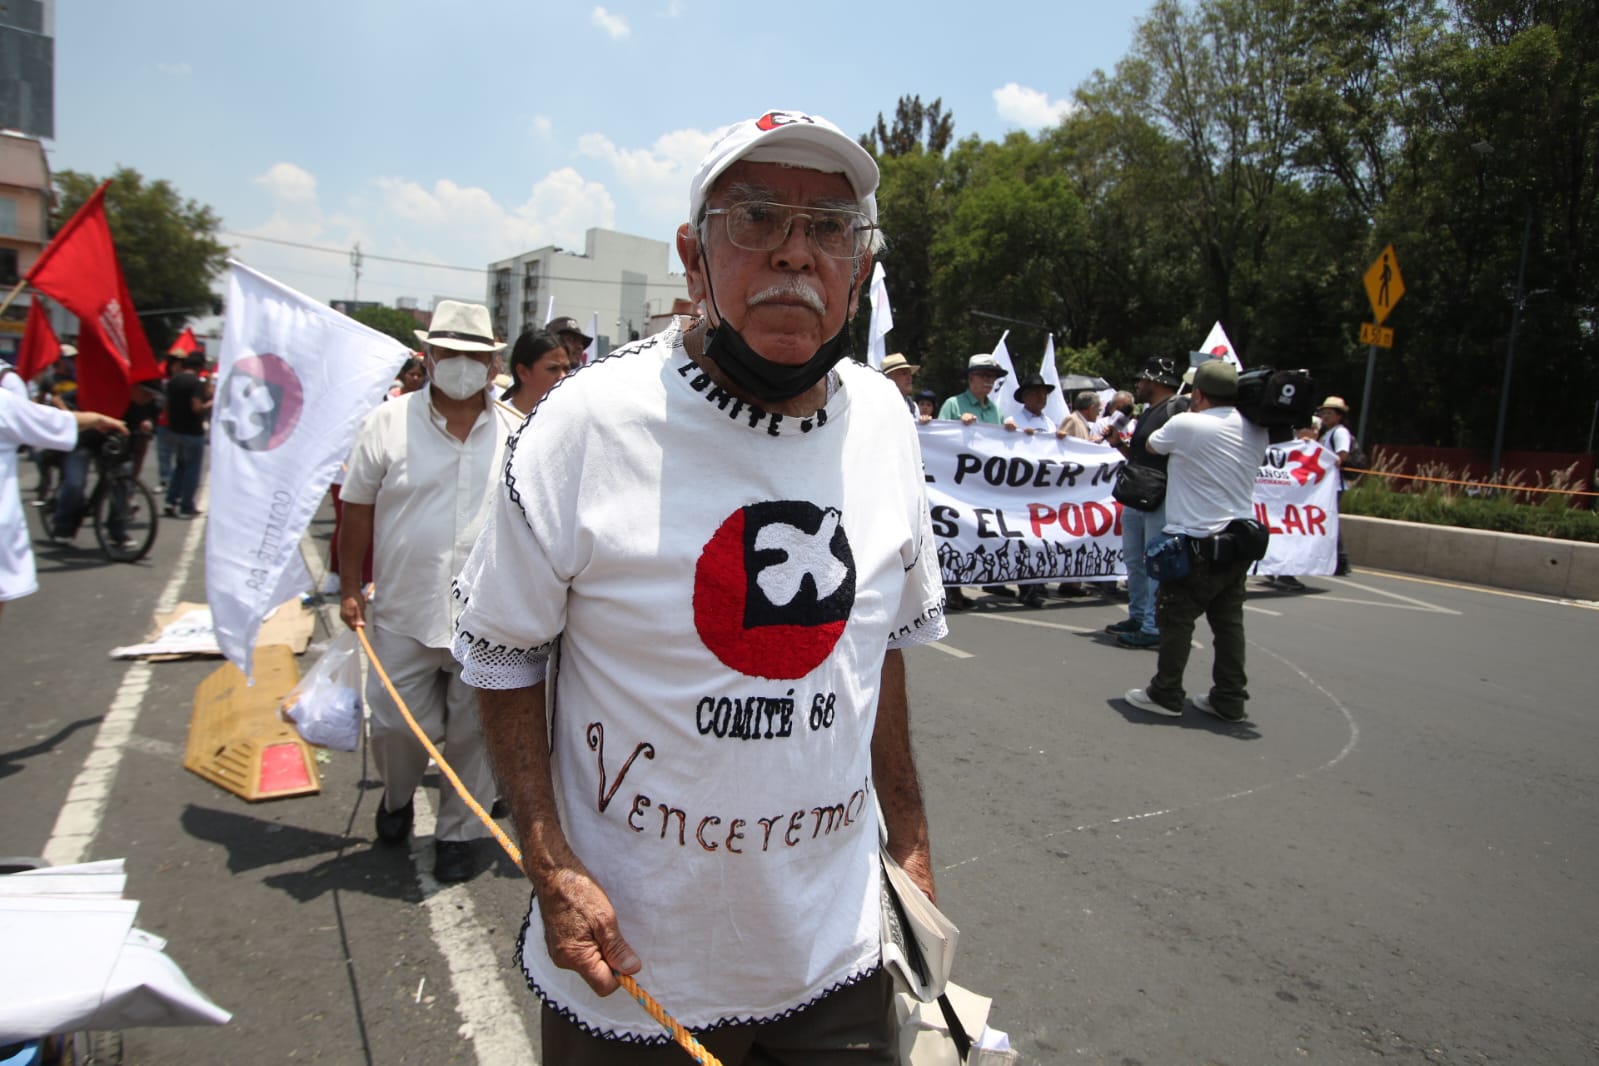 Sobrevivientes y familiares de víctimas de la Matanza del Jueves de Corpus marchan al Zócalo; exigen reabrir el caso y detener militarización